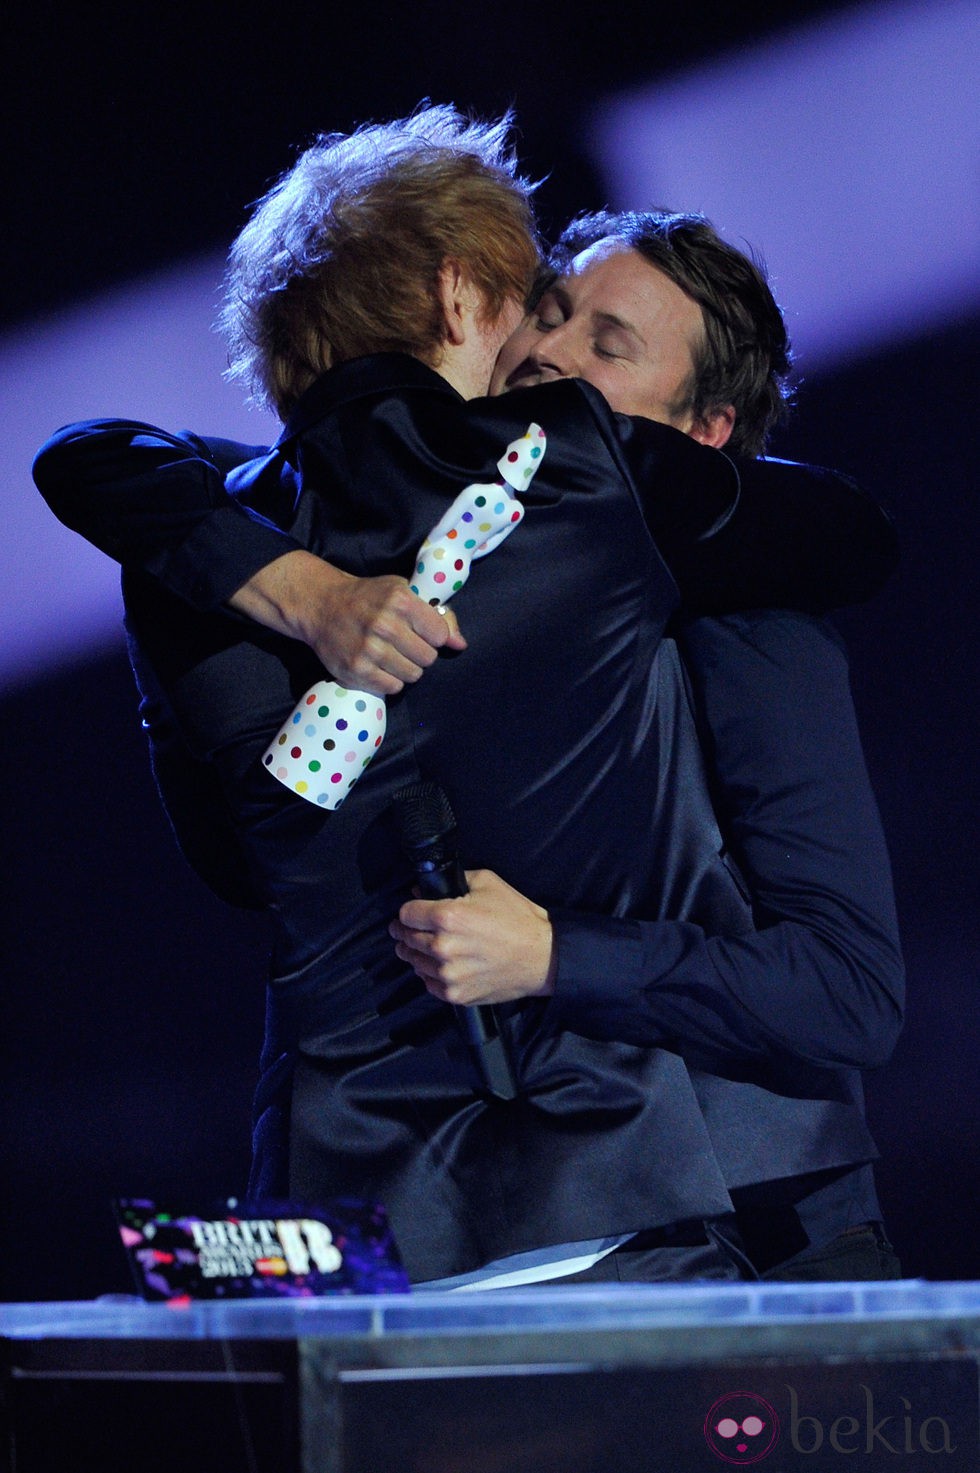 Ed Sheeran abraza a Ben Howard tras entregarle un Brit Awards 2013.